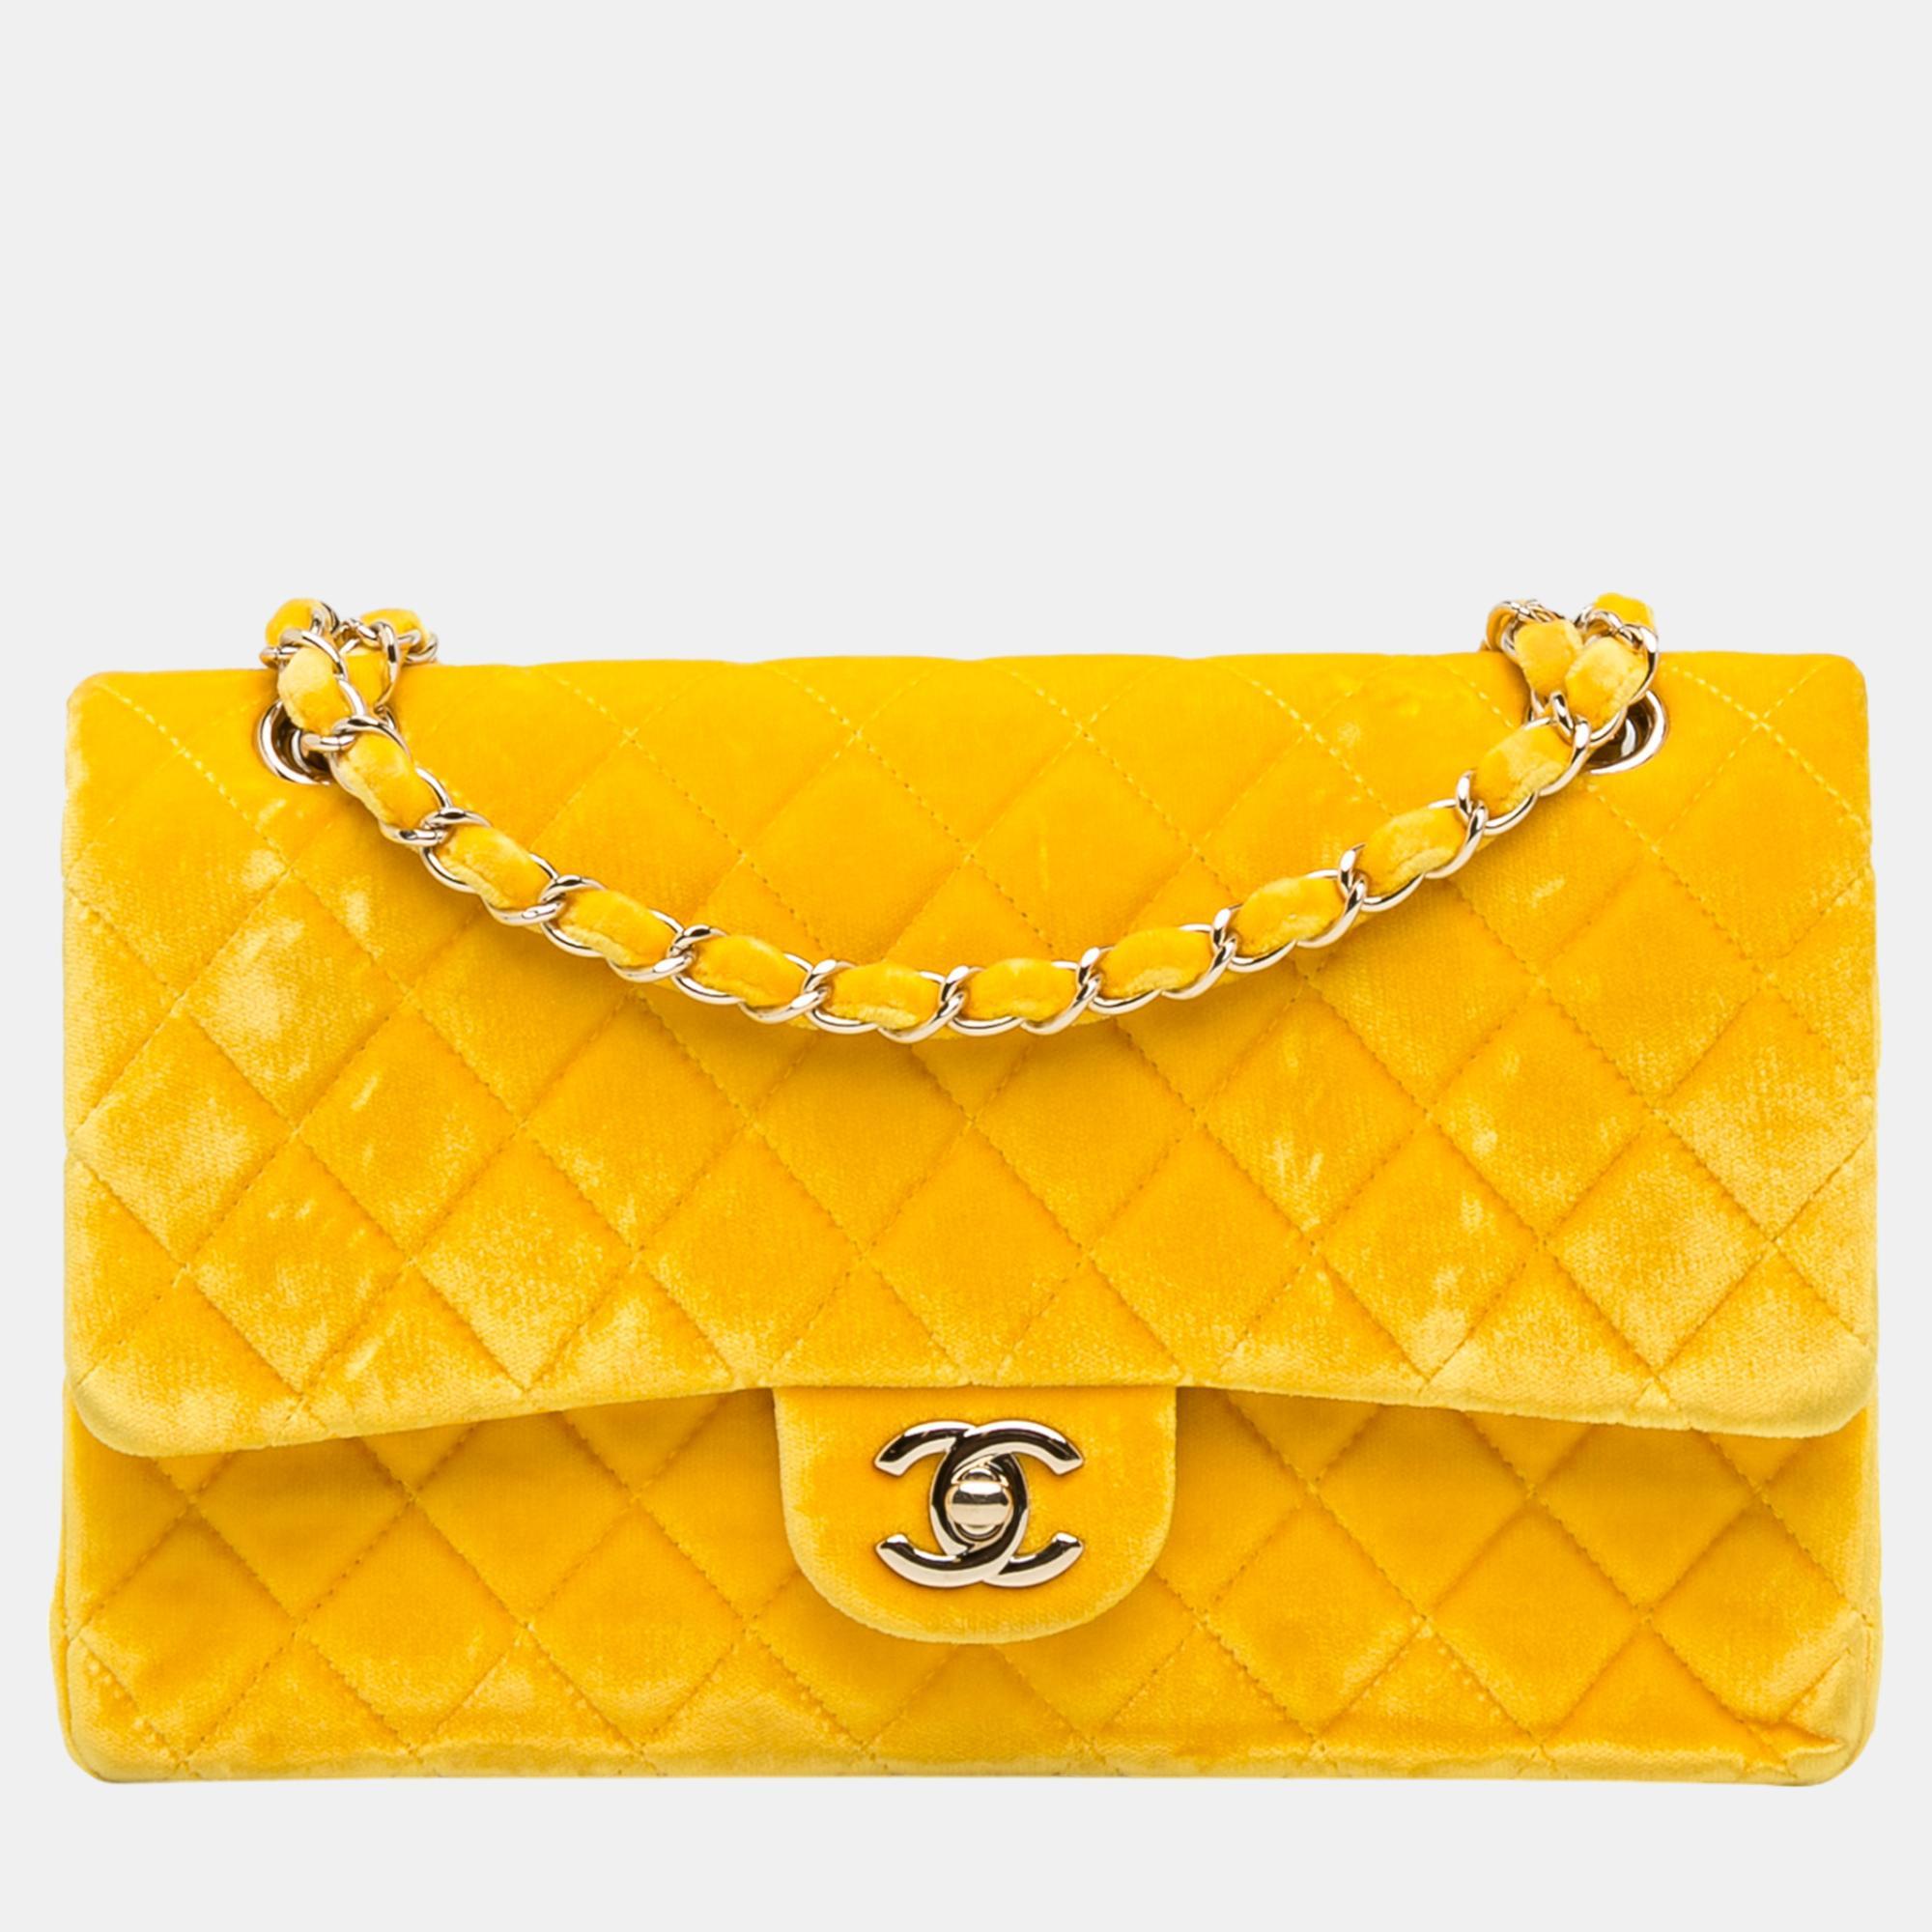 Chanel yellow medium classic velvet double flap